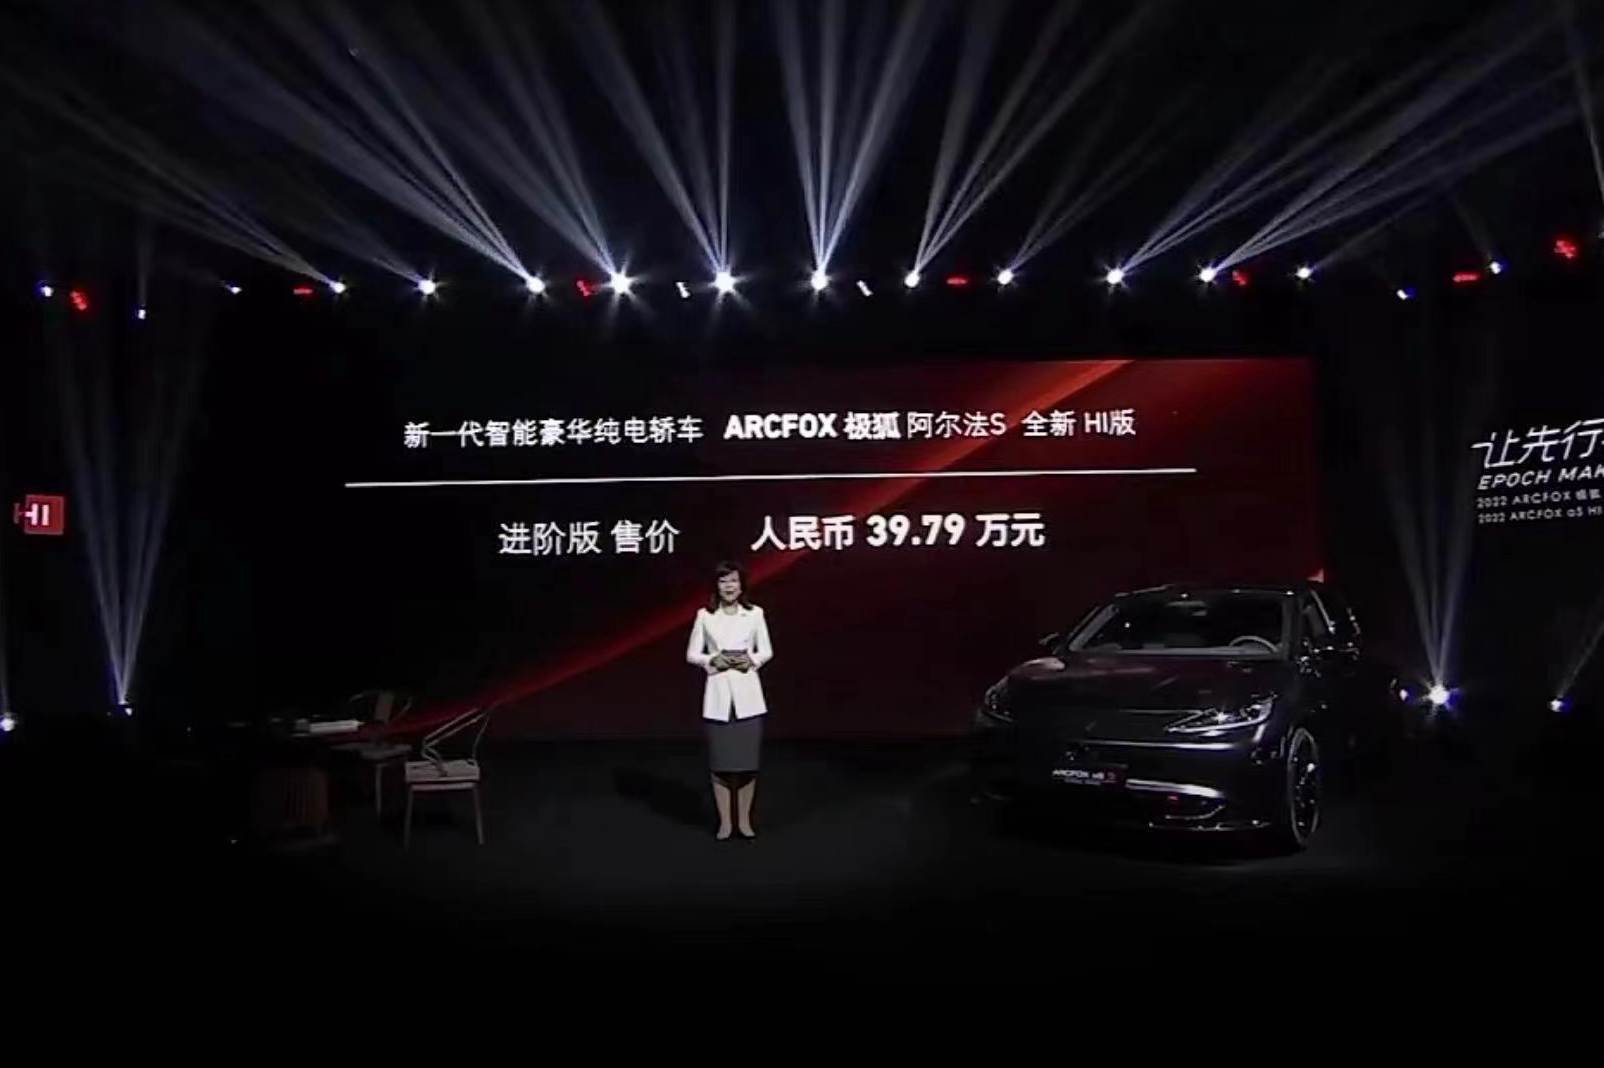 搭载华为全栈智能汽车方案 极狐阿尔法S全新HI版售价37.99万元起